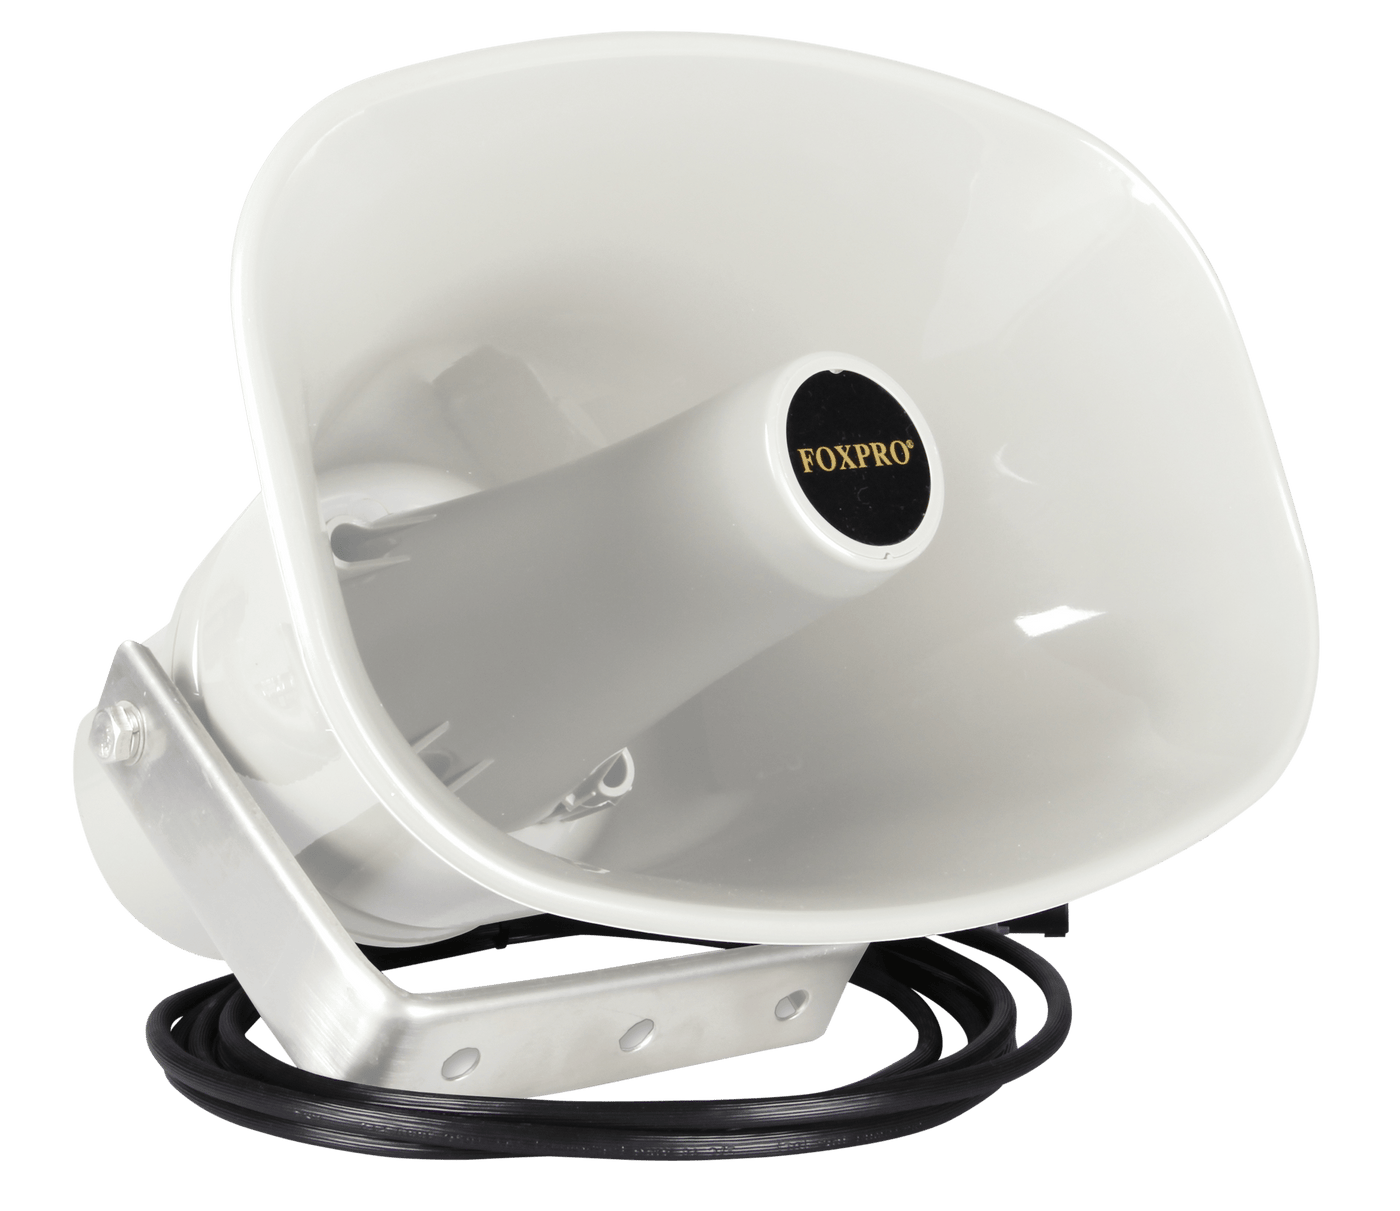 Foxpro Foxpro Snow Pro Speaker, Foxpro Sp-70scw        External Speaker Accessories